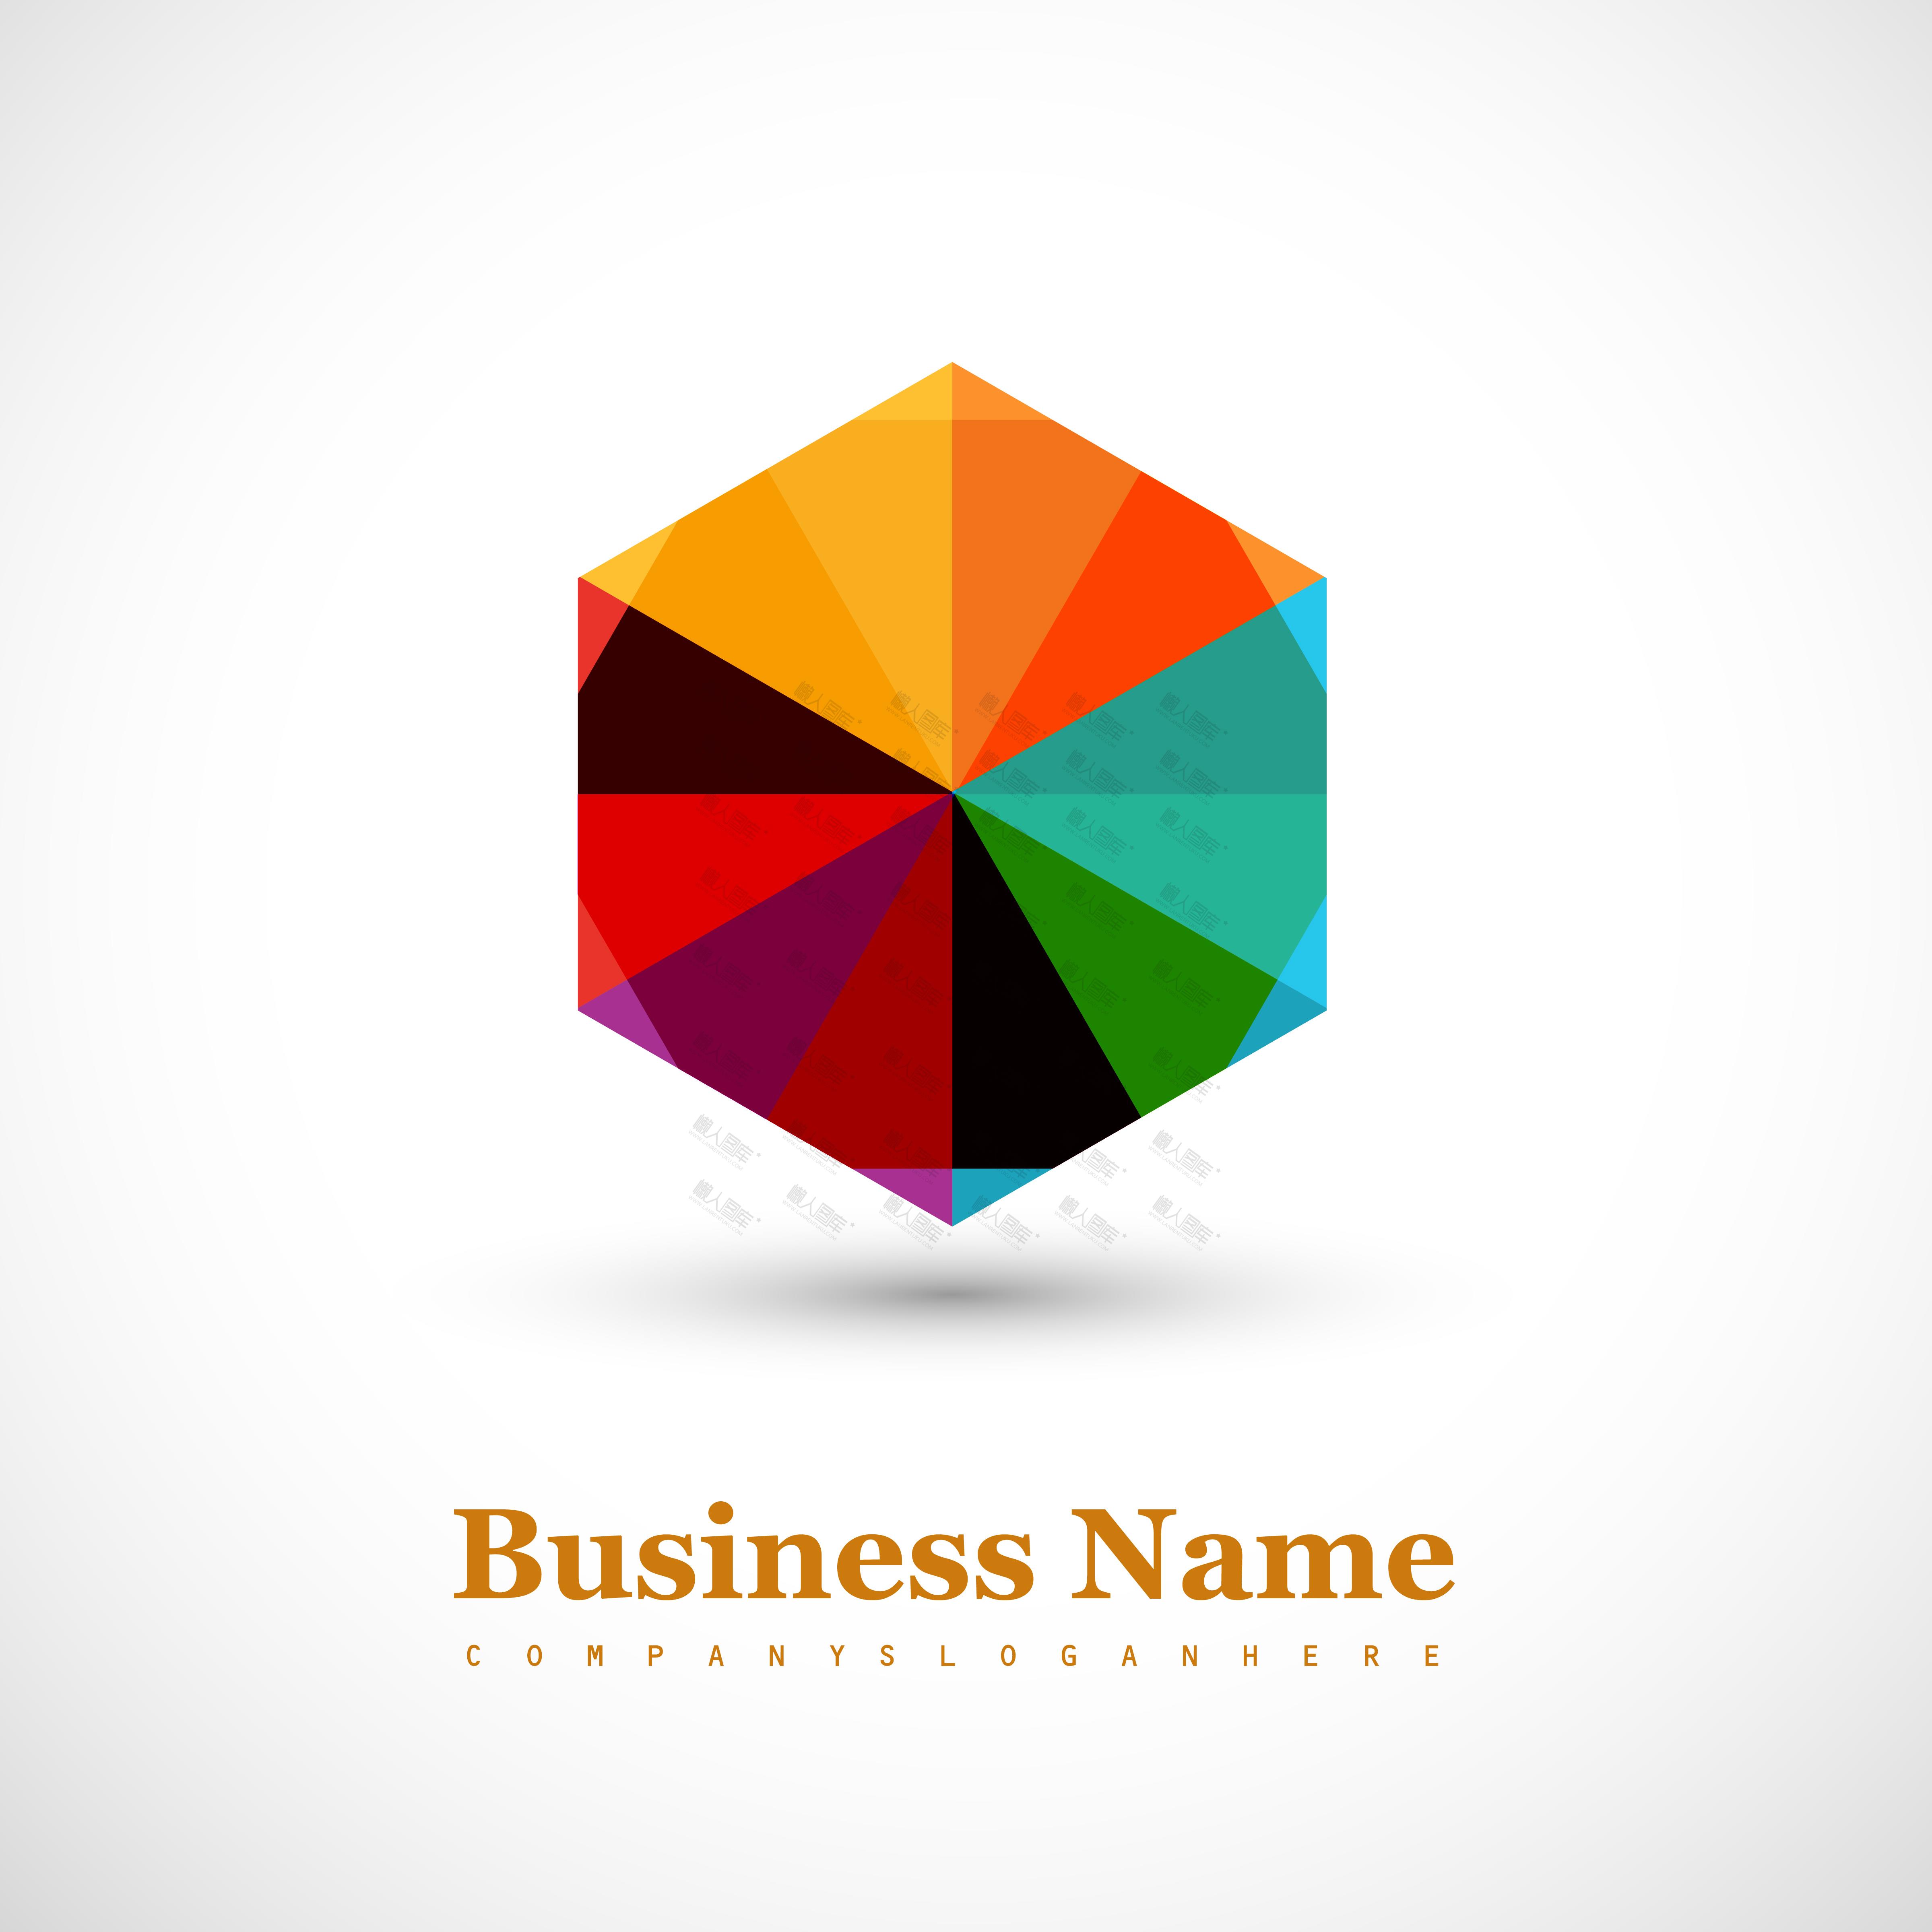 商业公司logo设计